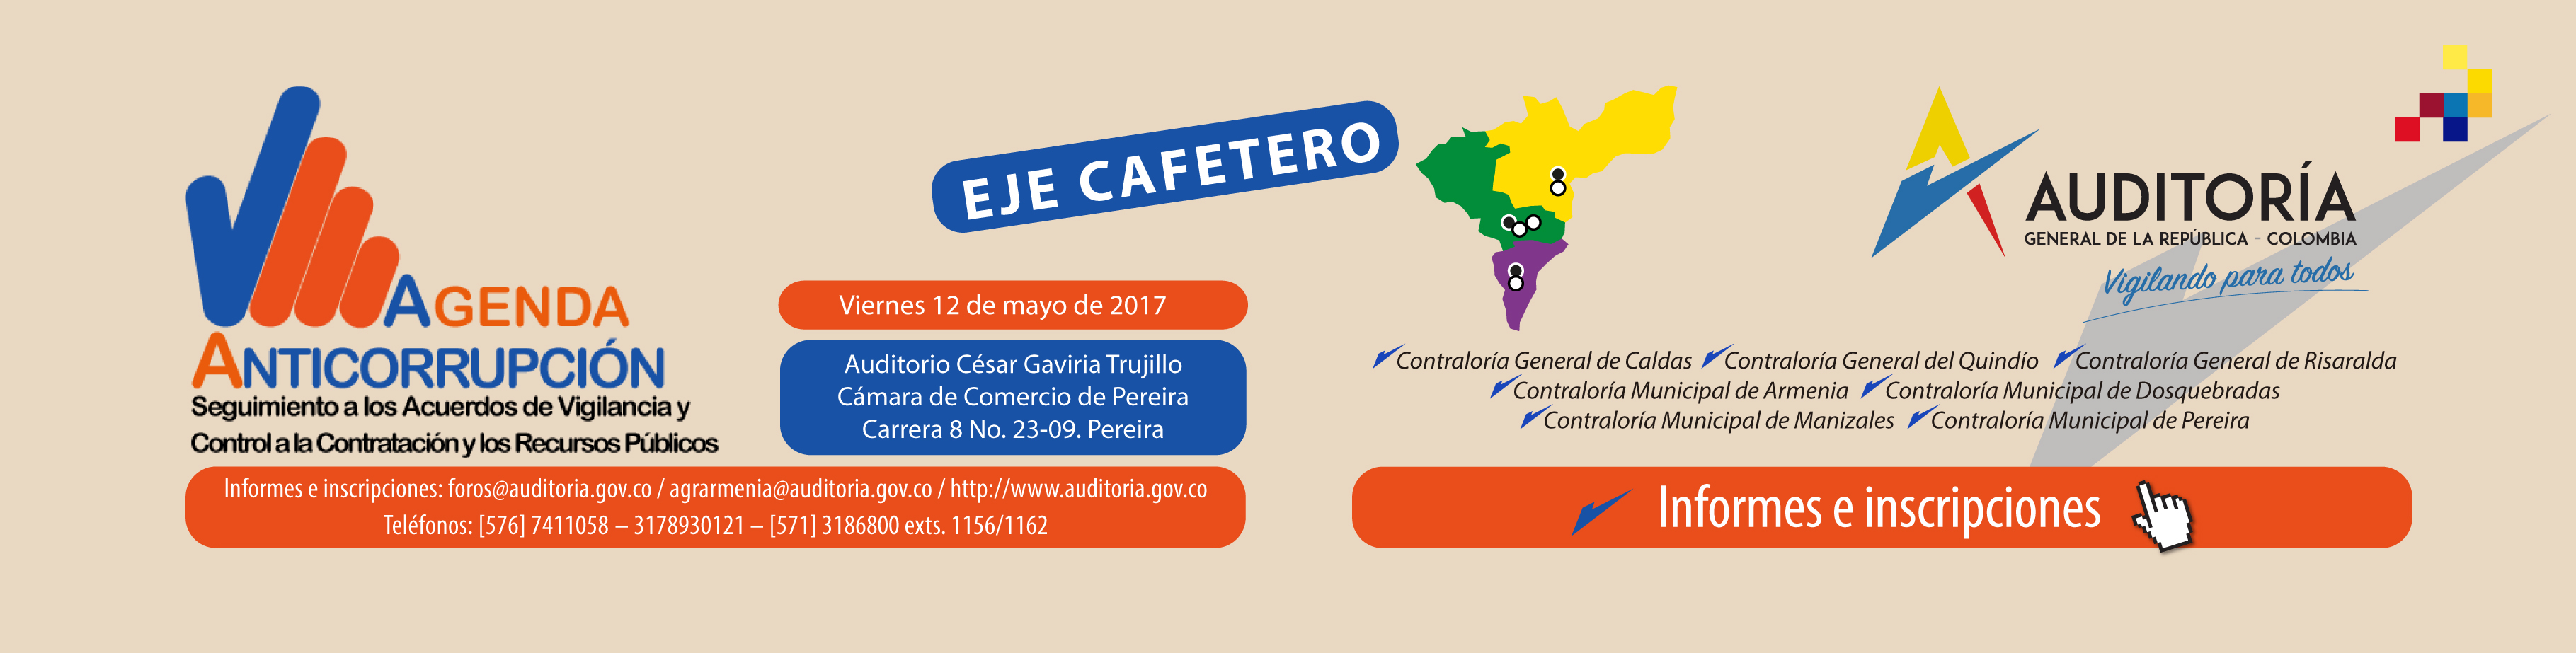 Agenda Anticorrupción - Eje Cafetero